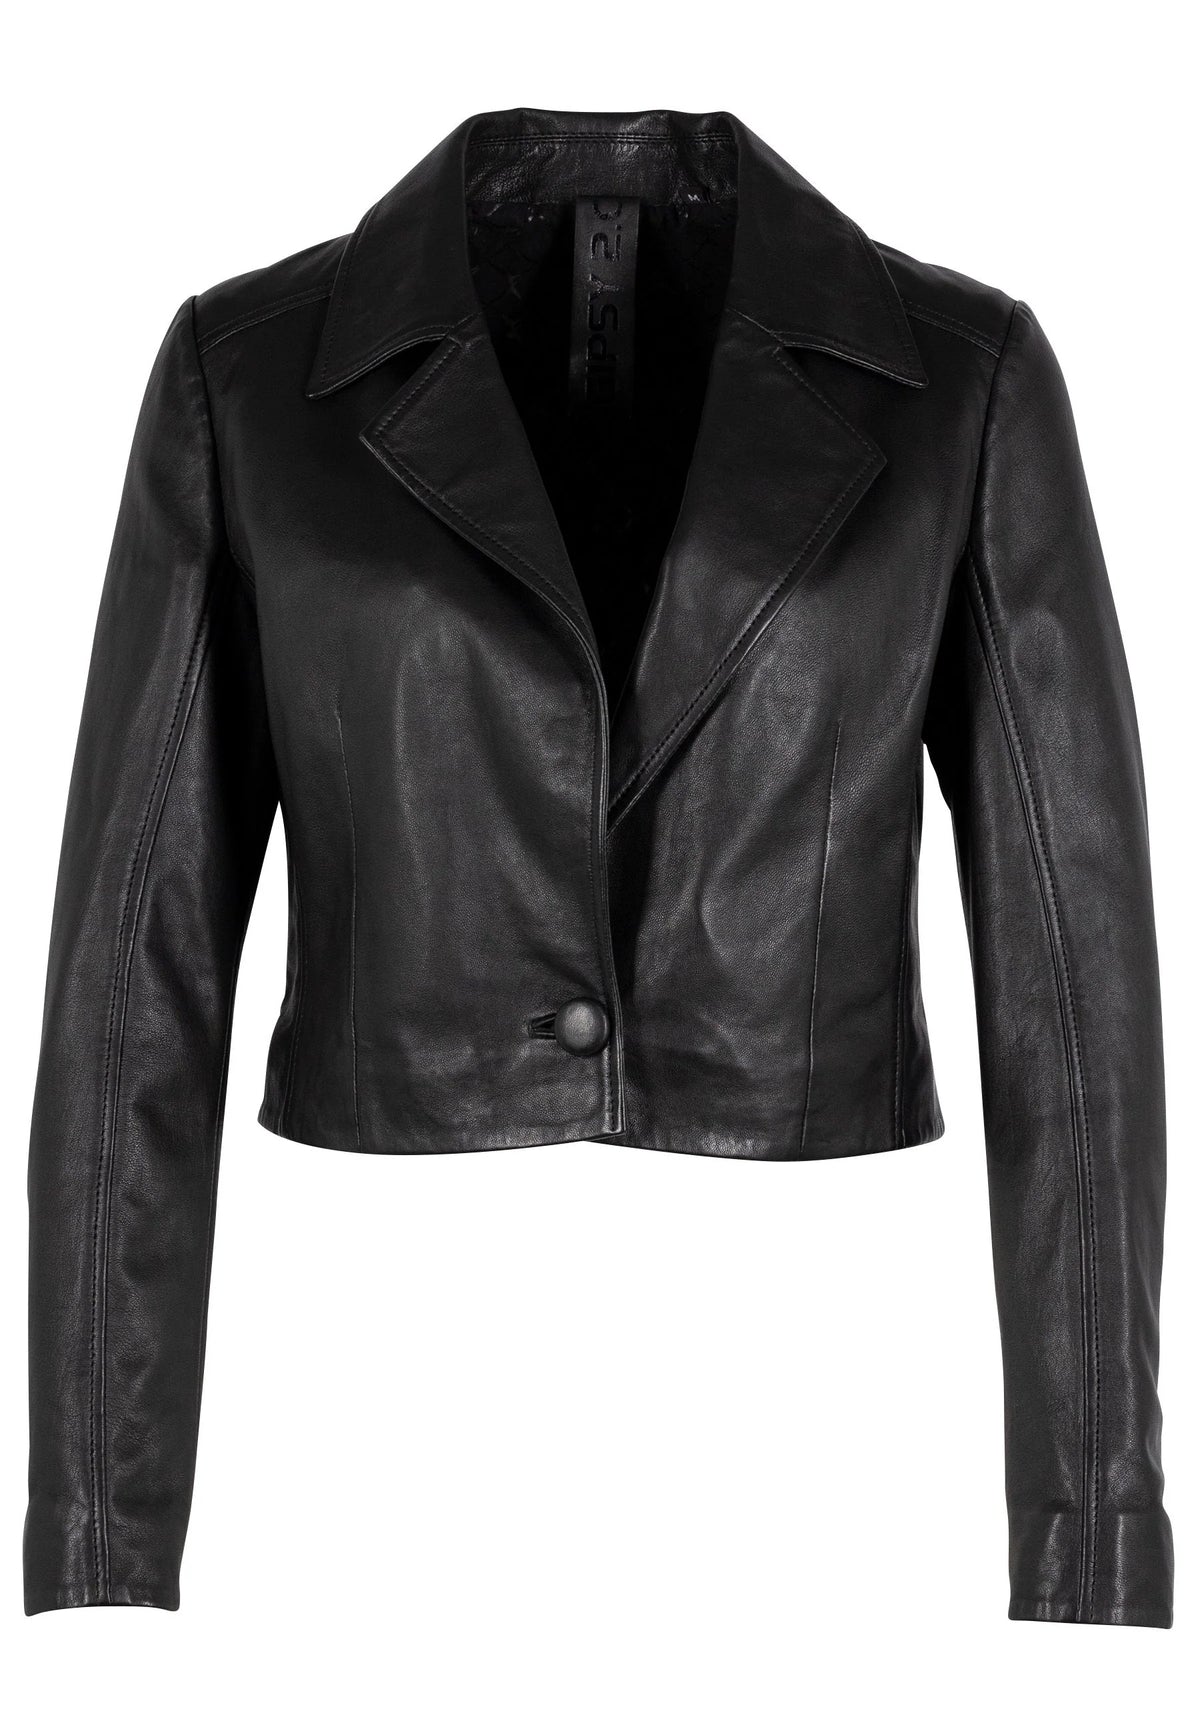 Acita Leather Jacket - Black